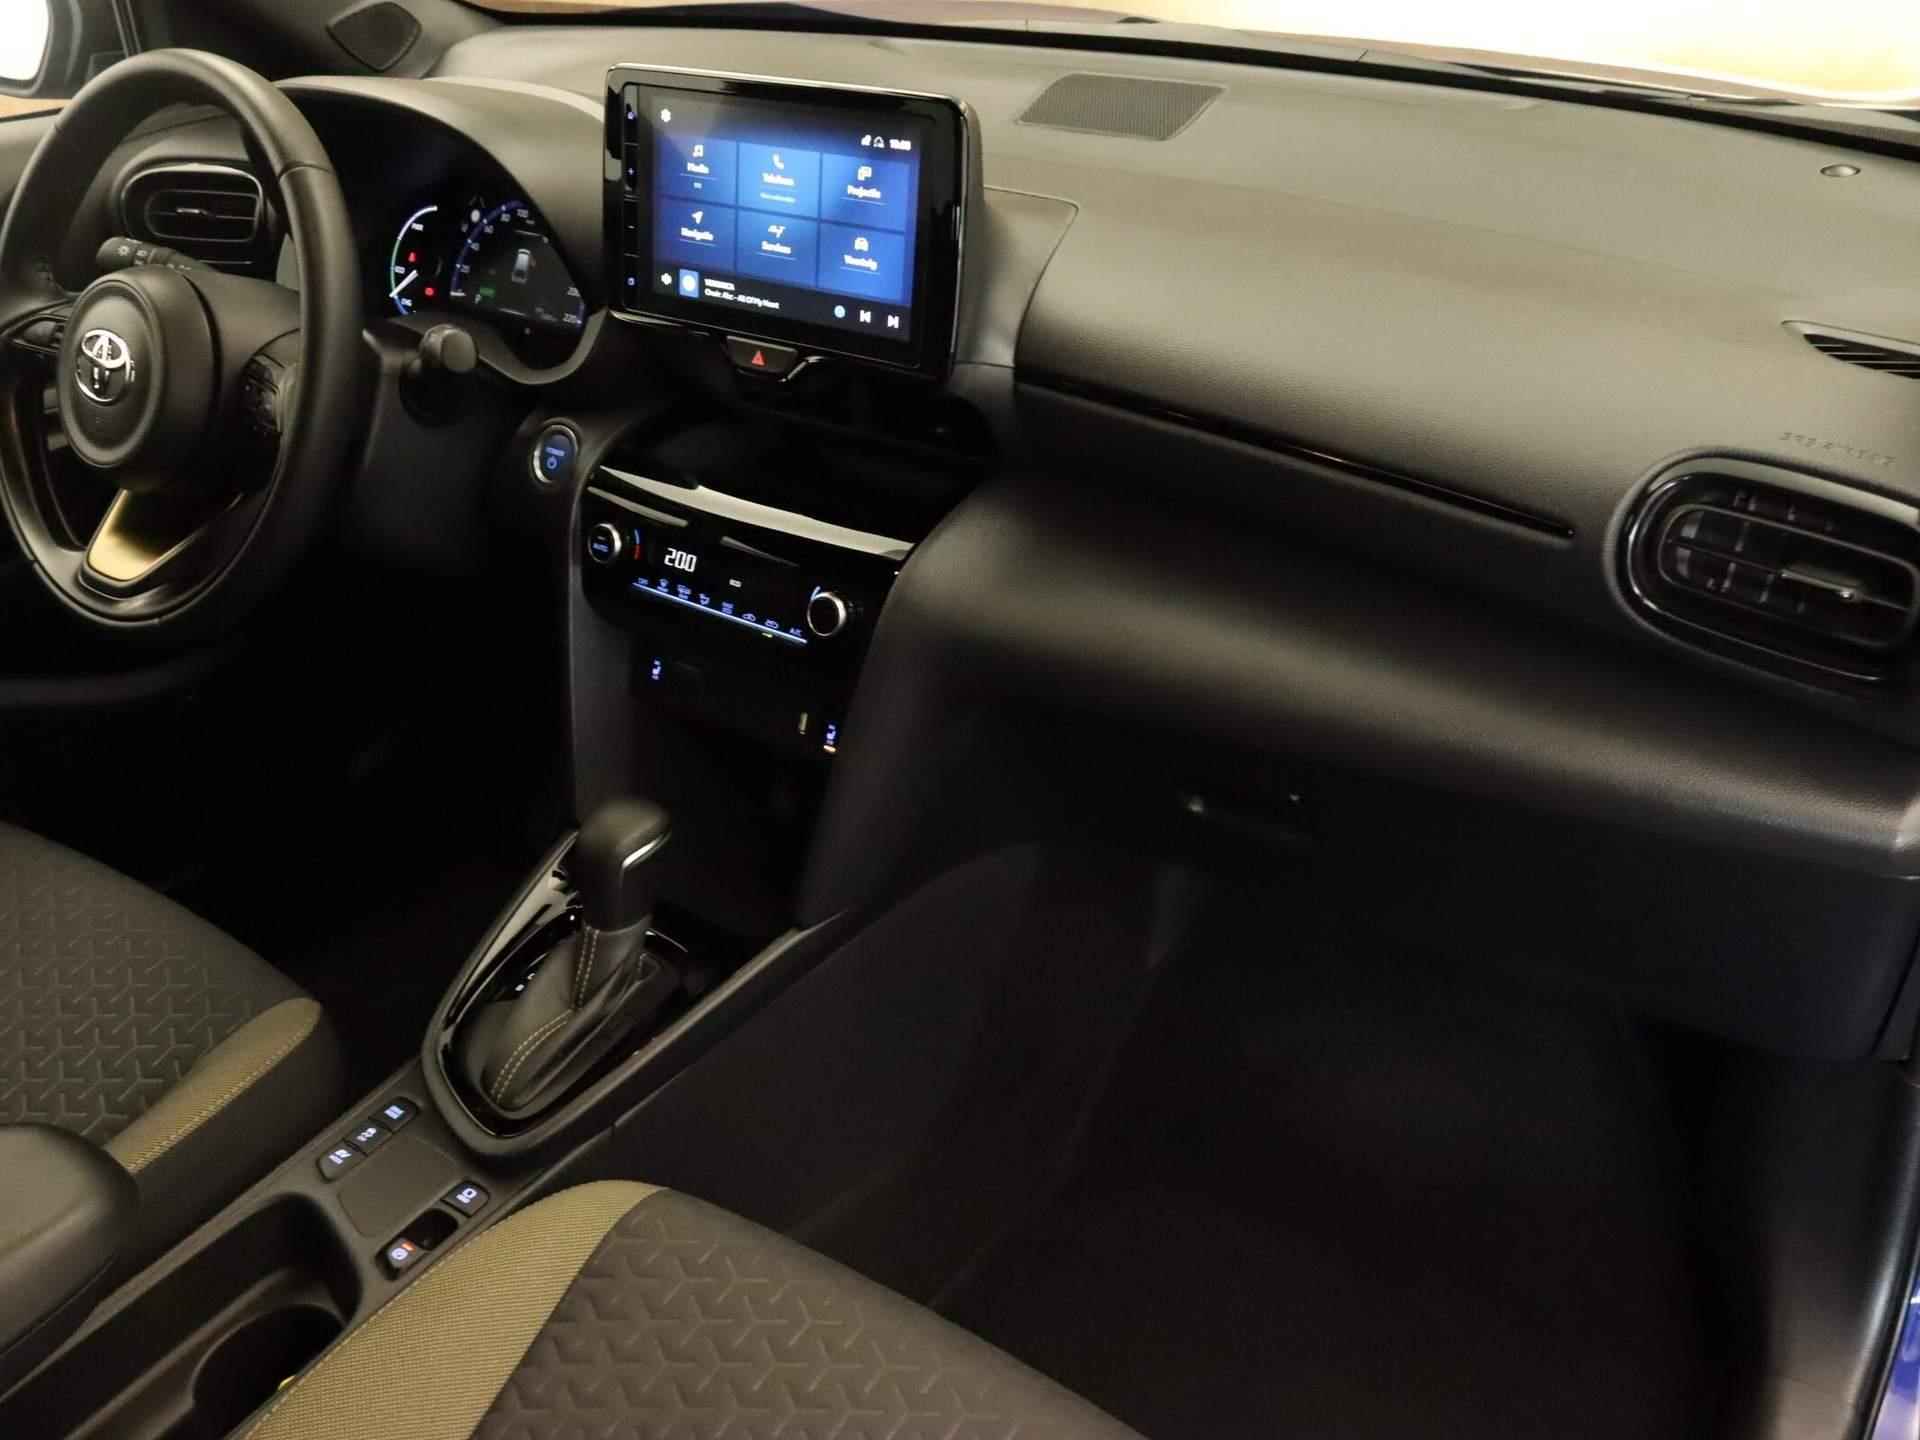 Toyota Yaris Cross 1.5 Hybrid Explore ORIGINEEL NEDERLANDSE AUTO - NAVIGATIE - PDC VOOR EN ACHTER - APPLE CARPLAY/ANDROID AUTO - STOELVERWARMING VOOR - 5/30